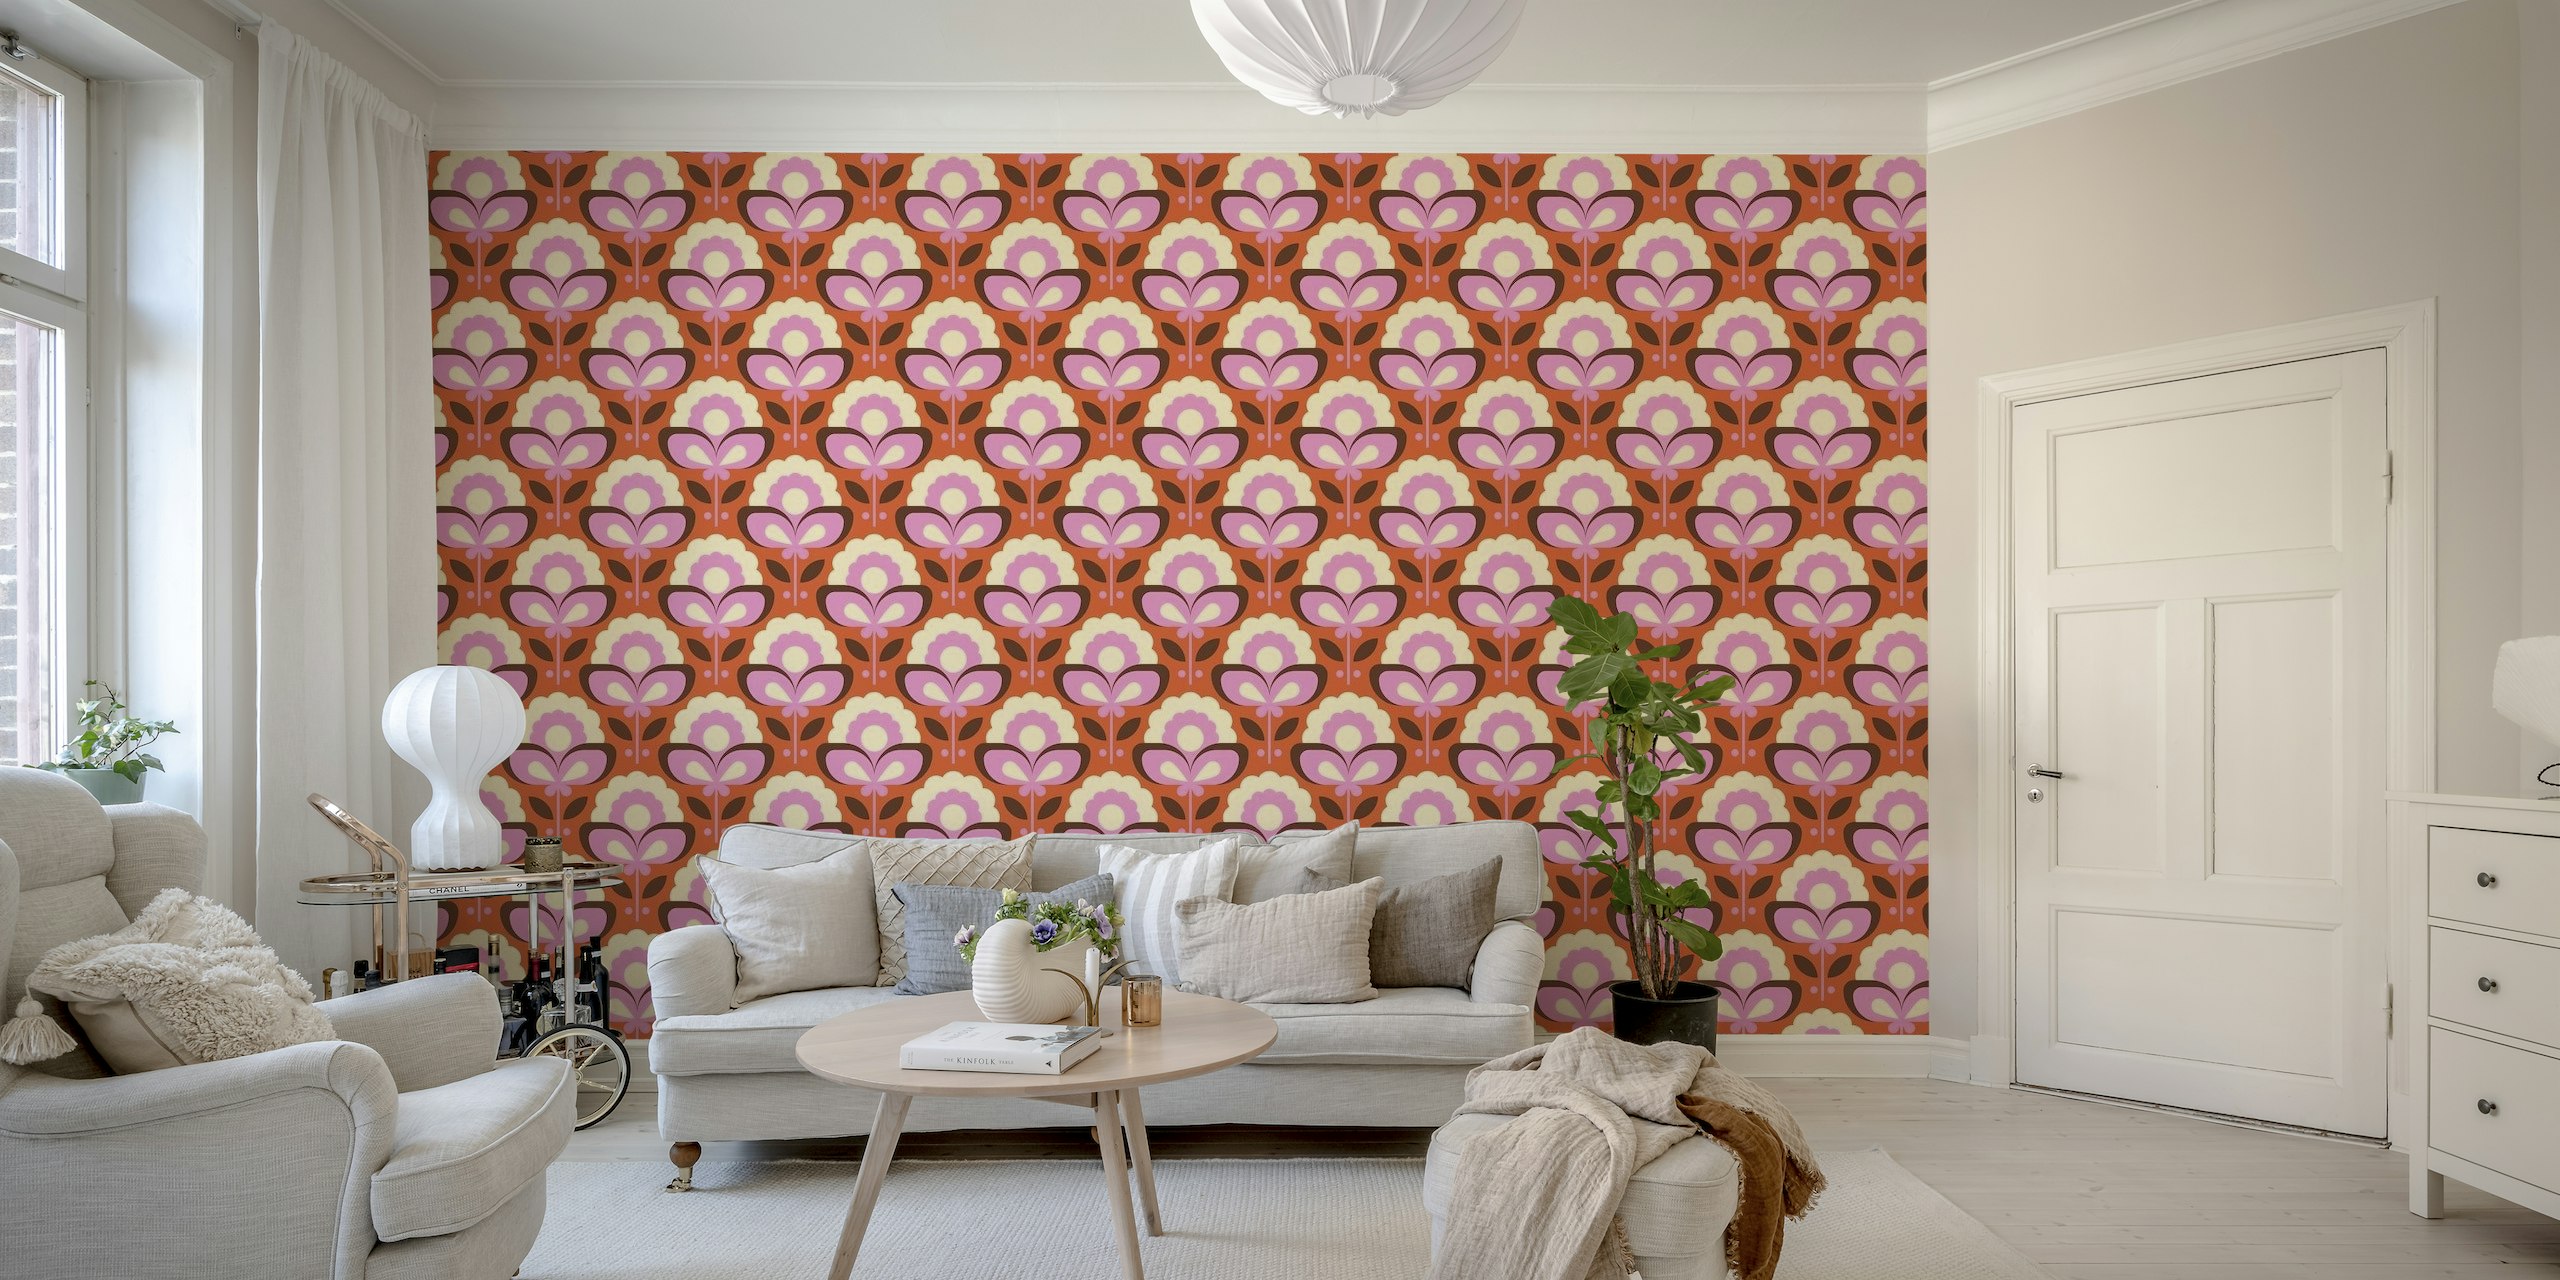 Papier peint mural de style rétro avec des fleurs et des motifs roses et oranges